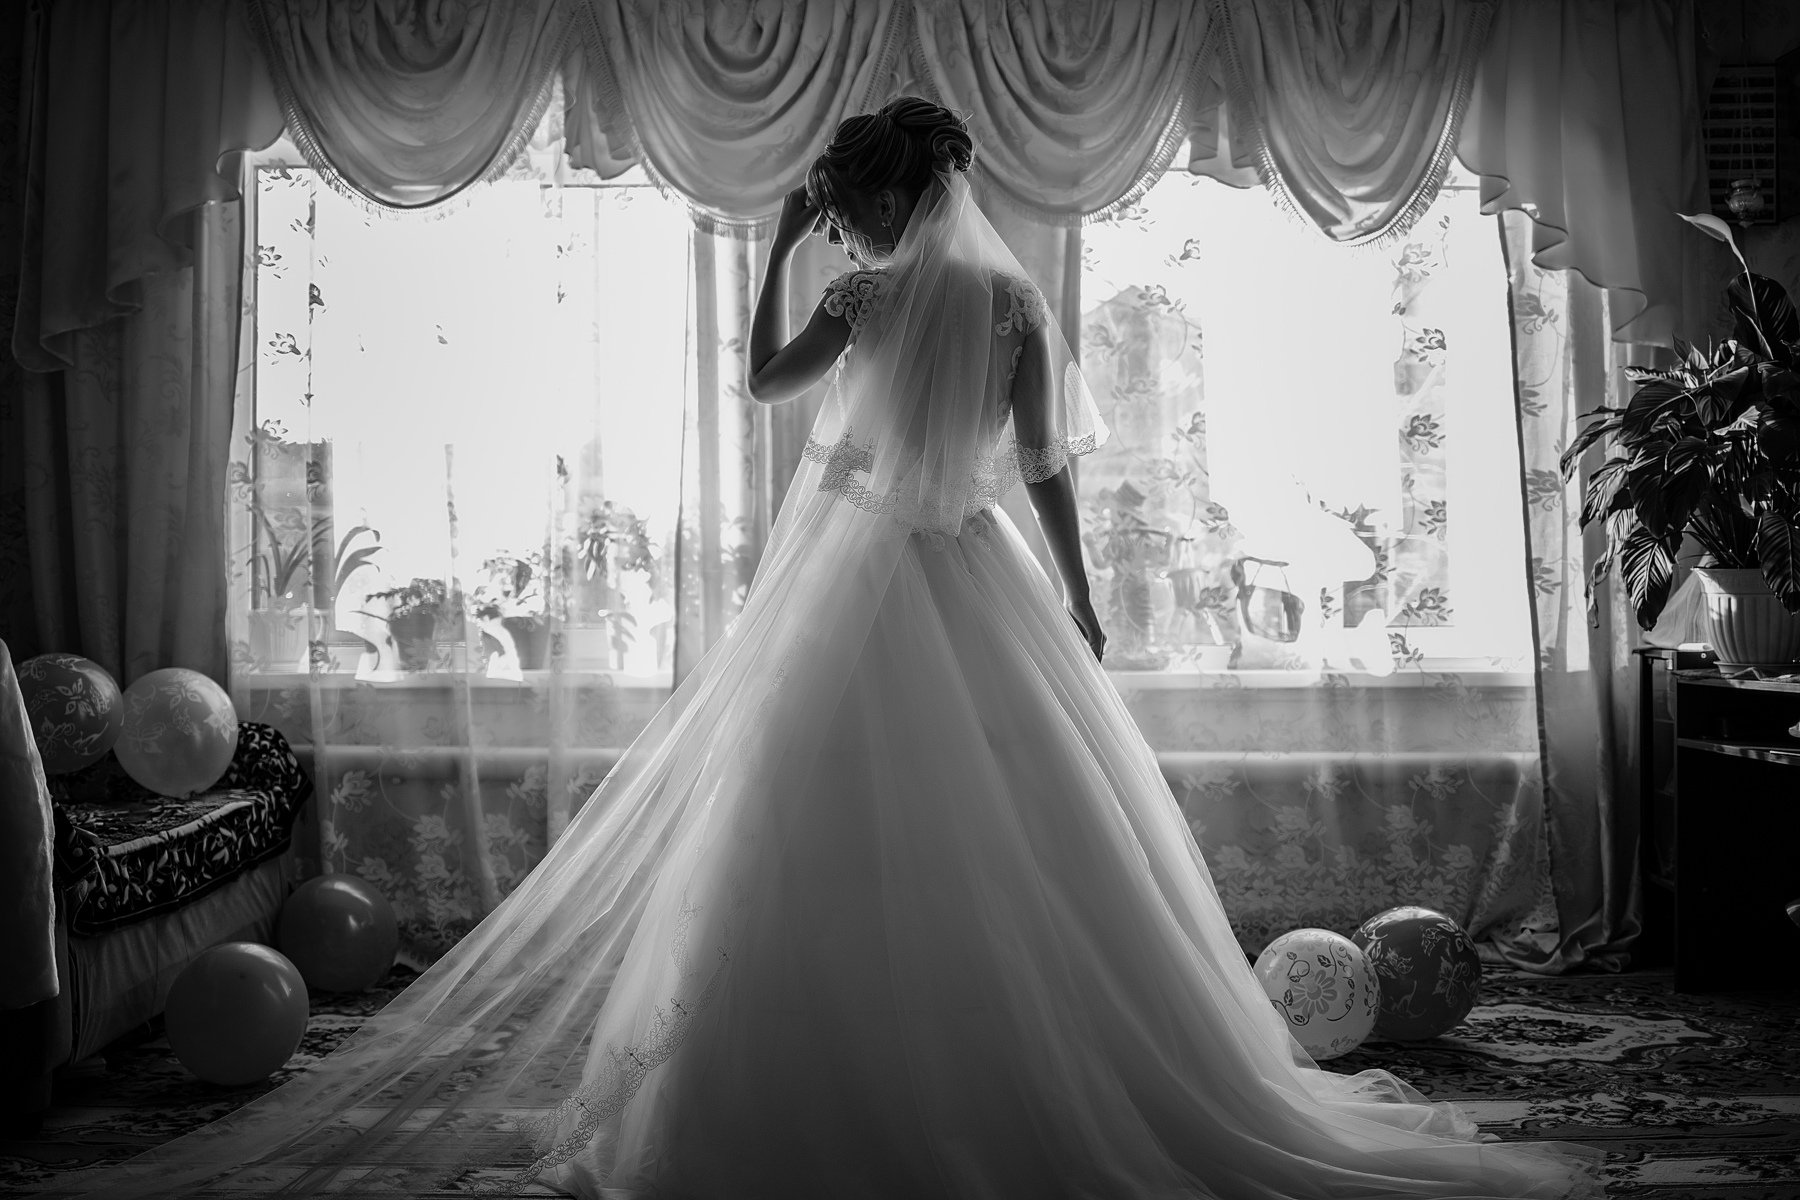 свадьба, свадебная фотосессия, невеста, свадебный букет, свадебное платье, счастье, любовь, портрет, чёрно-белое фото, чб, Владимир Васильев